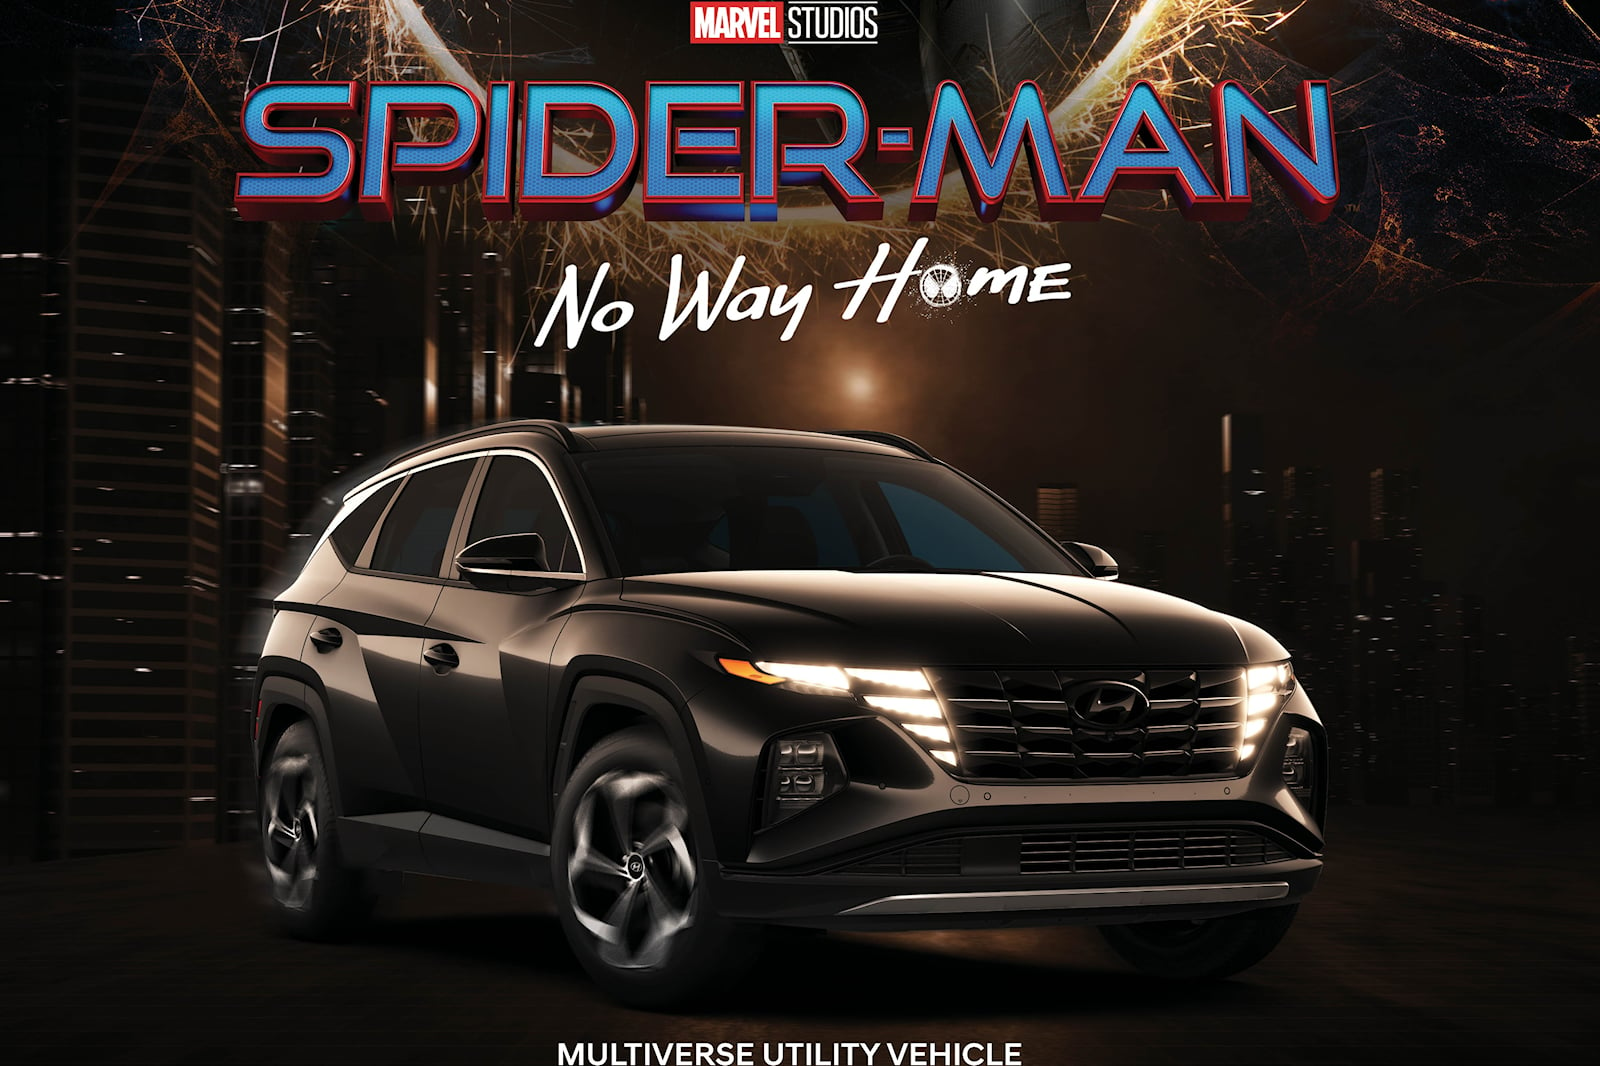 Hyundai Tucson featured in Spider-Man: No Way Home